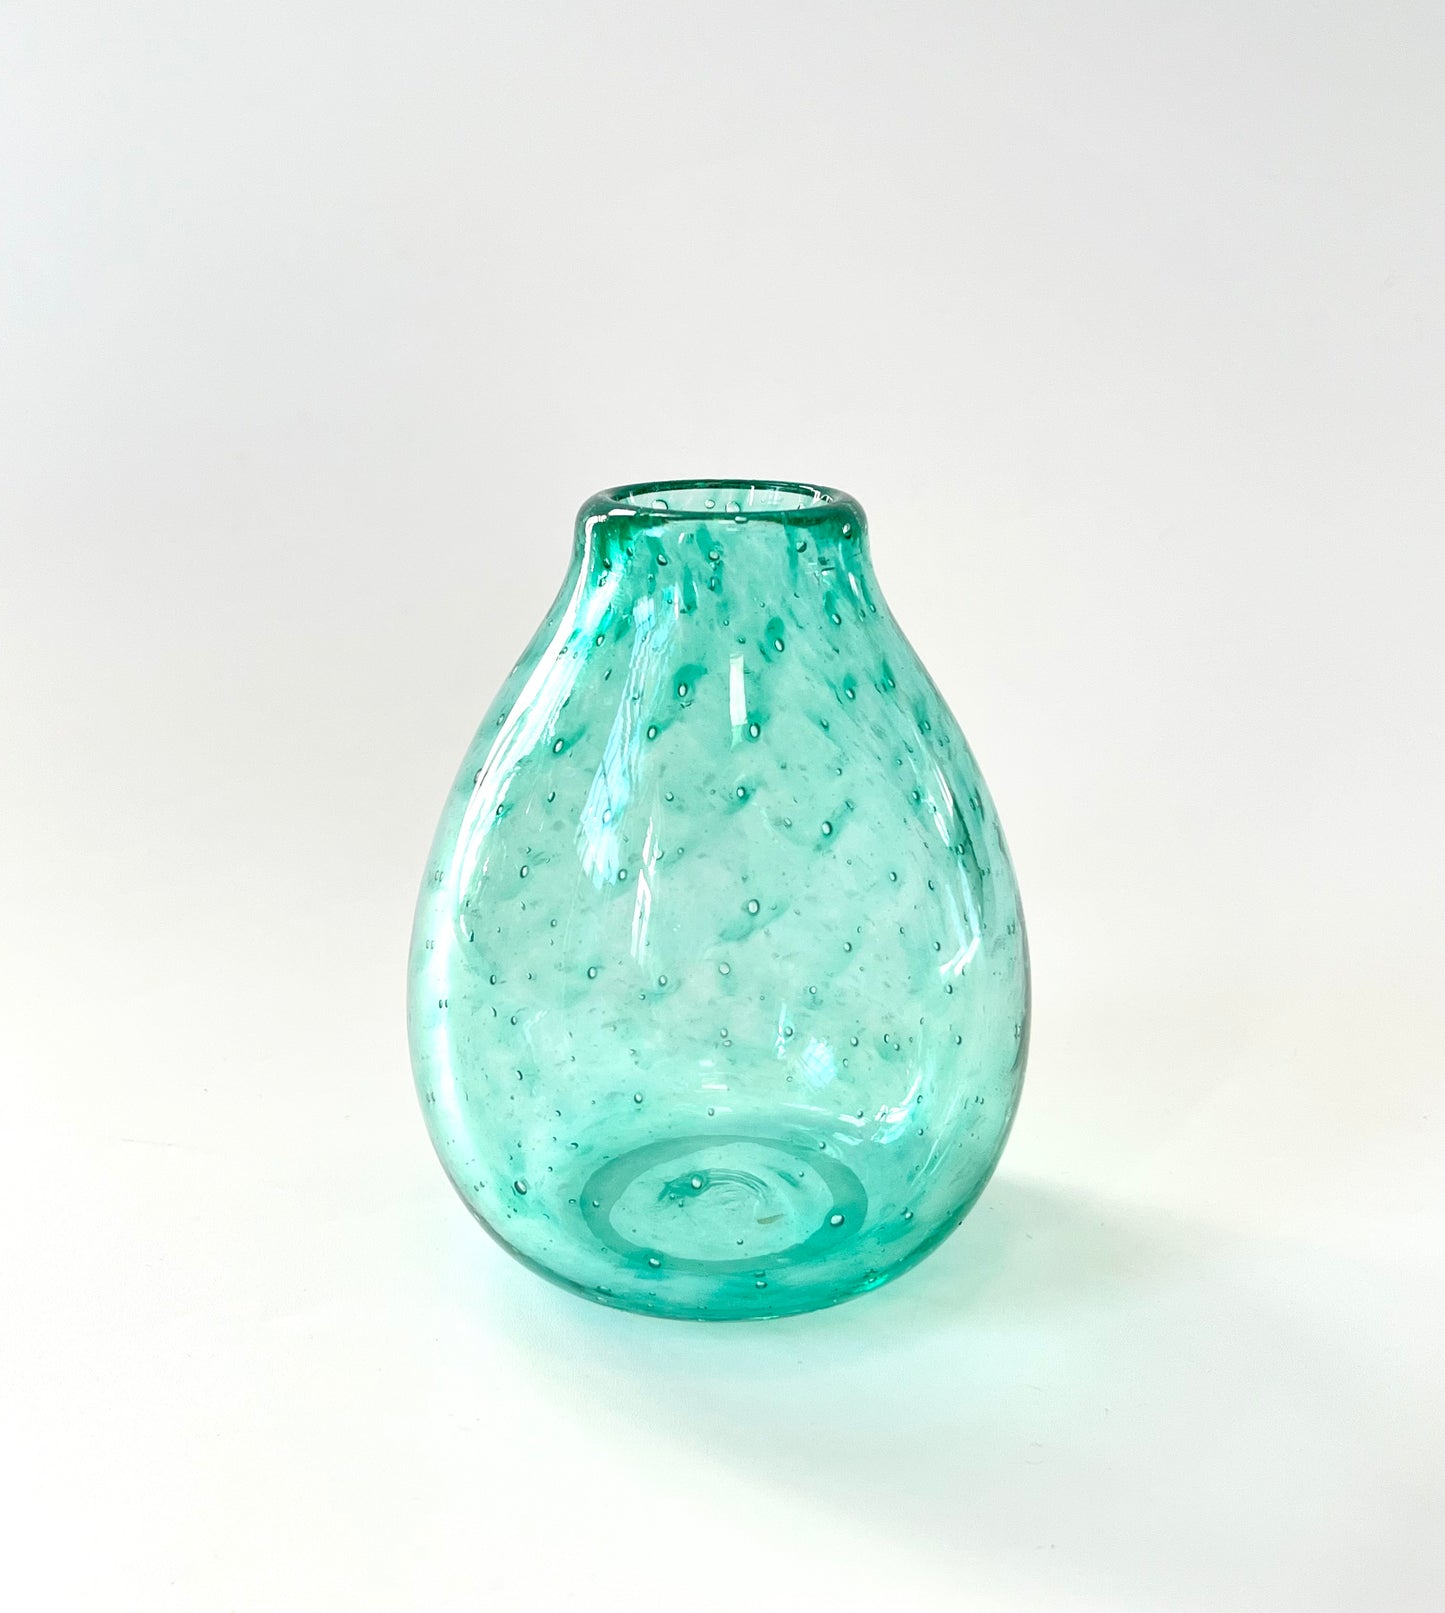 Handblown Glass Diffuser/Vase - Aqua